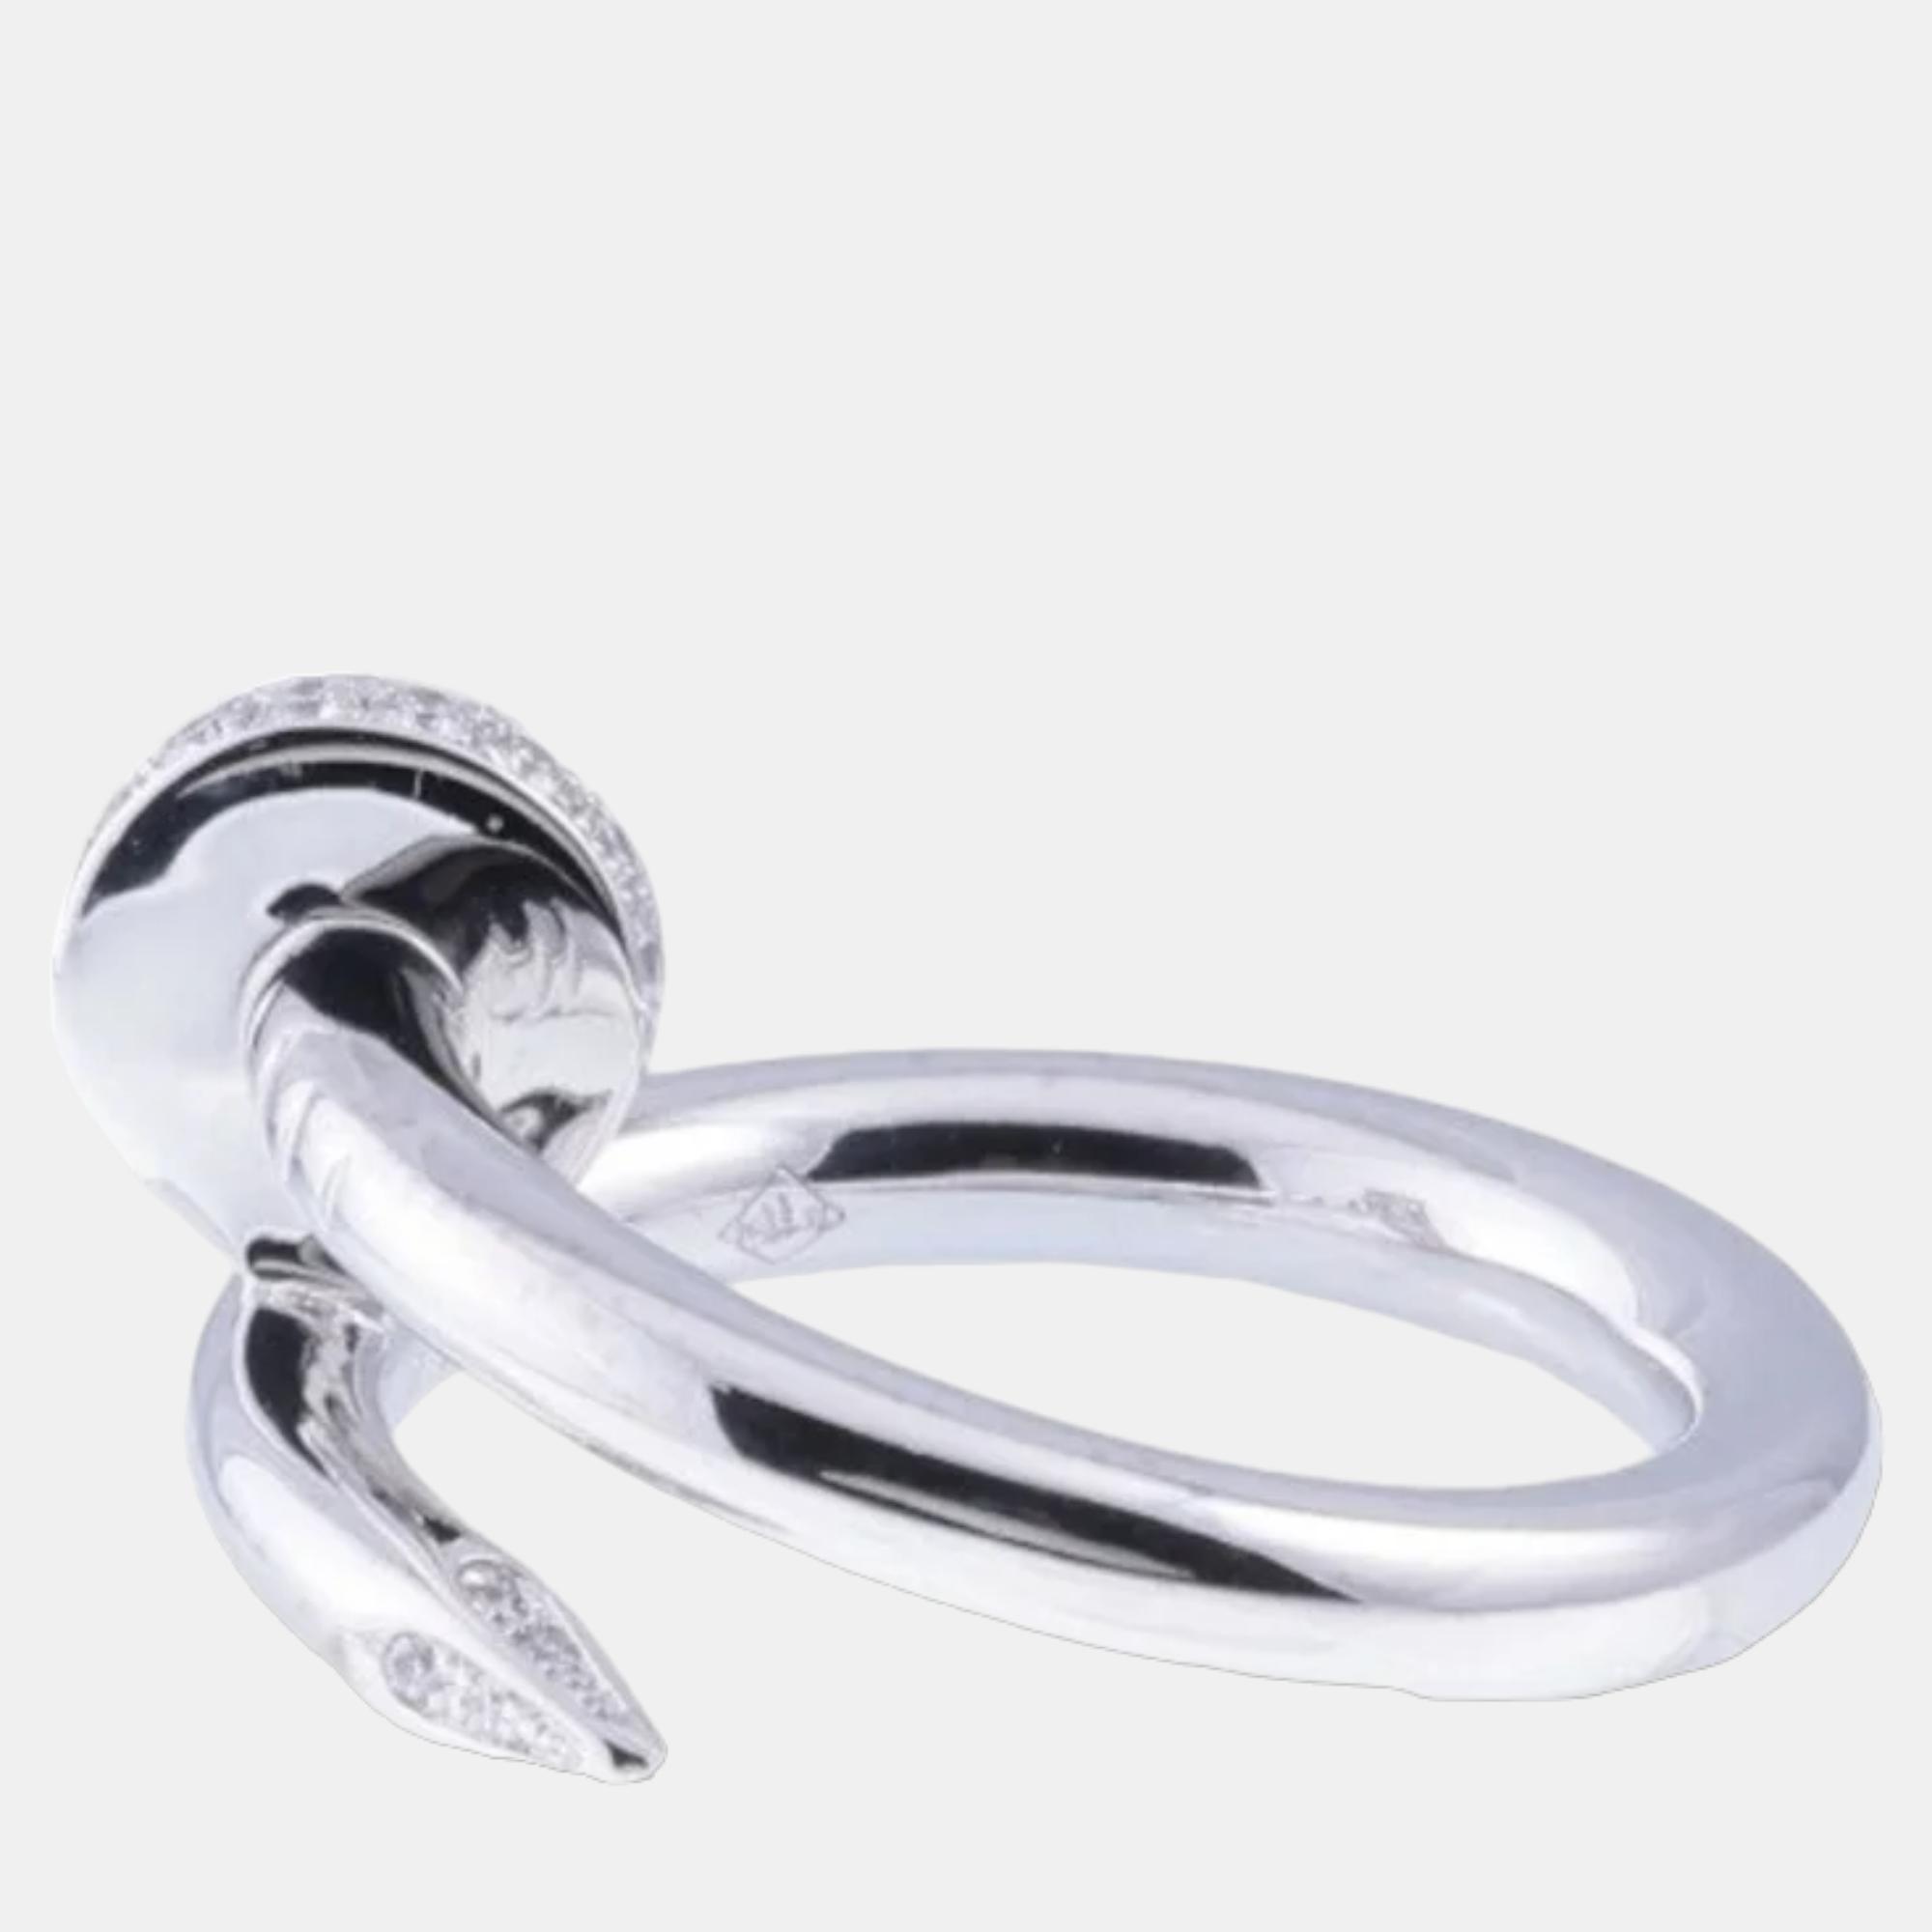 Cartier Juste Un Clou 18K White Gold Diamond Ring EU 47